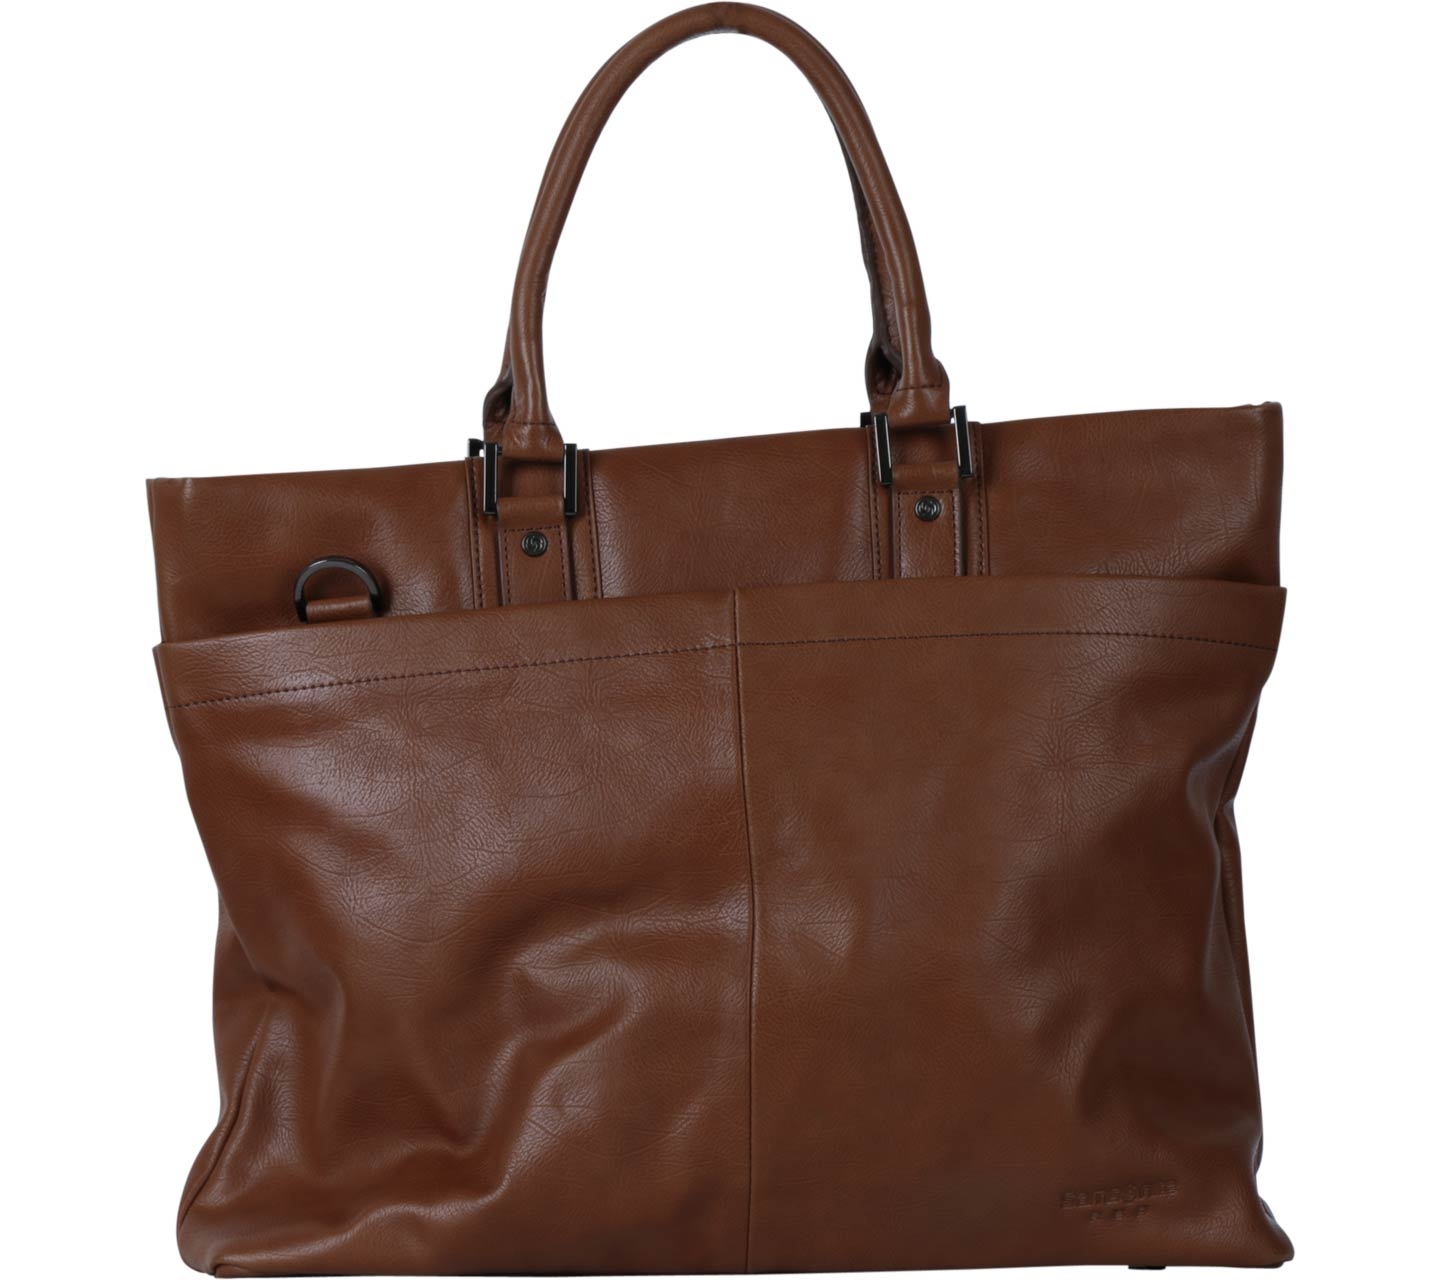 Samsonite Brown Tote Bag